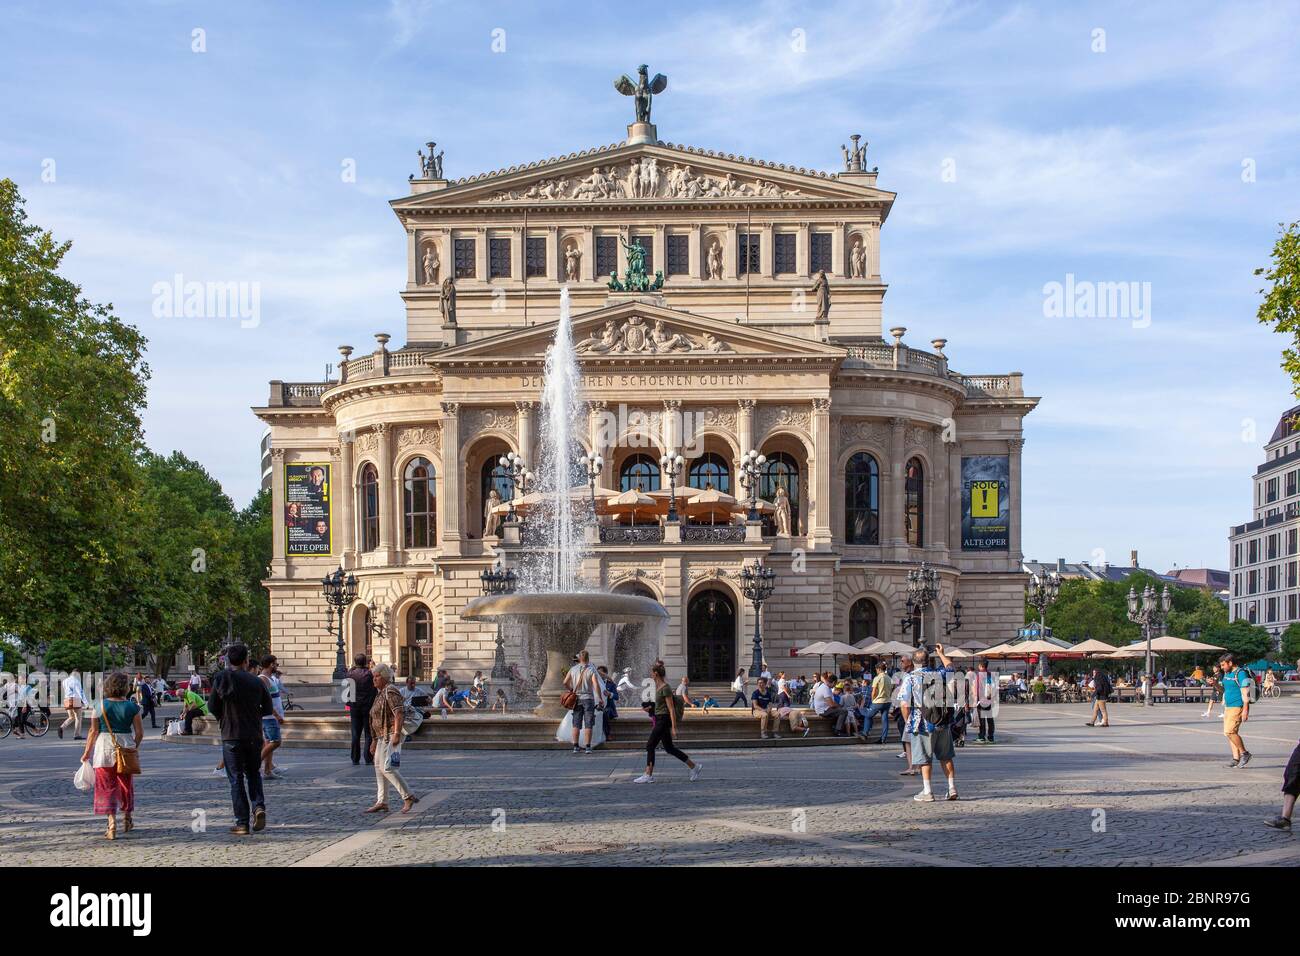 Alte Oper, Opernplatz, Francfort-sur-le-main, Hesse, Allemagne, Europe Banque D'Images